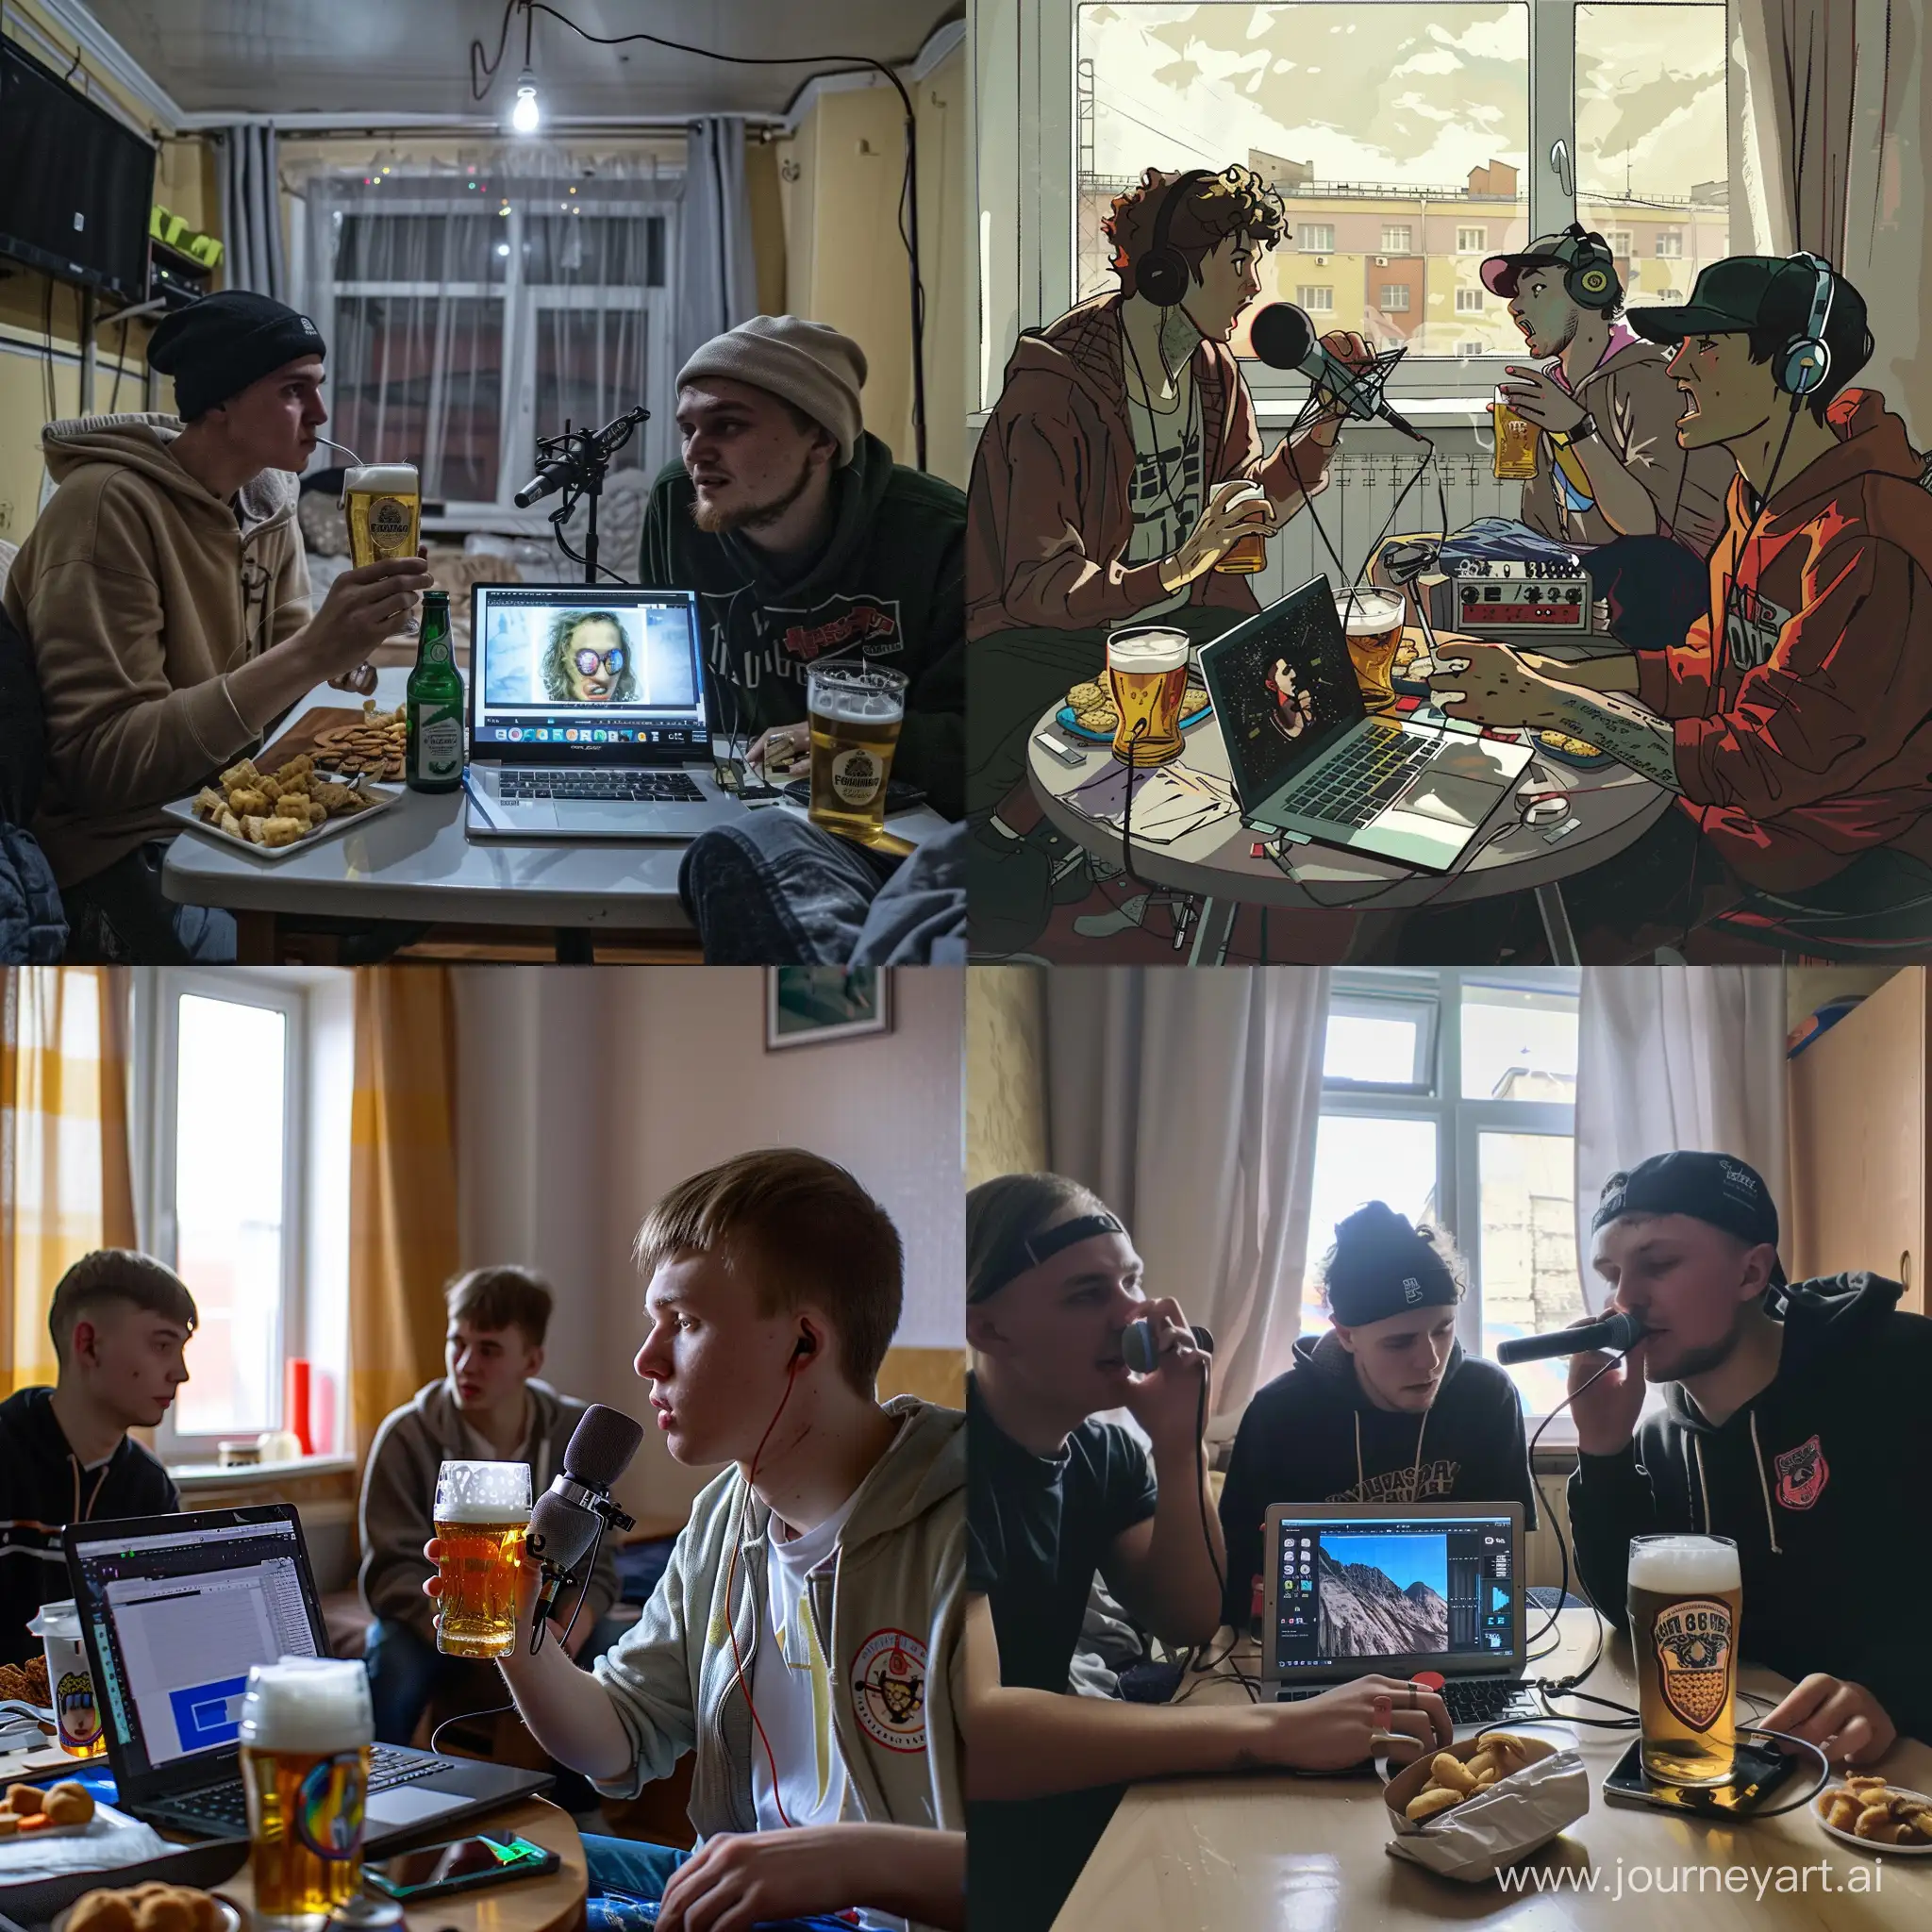 Русские студенты в русском общежитии пьют пиво, едят сухарики и записывают реп на ноутбук с микрофоном 